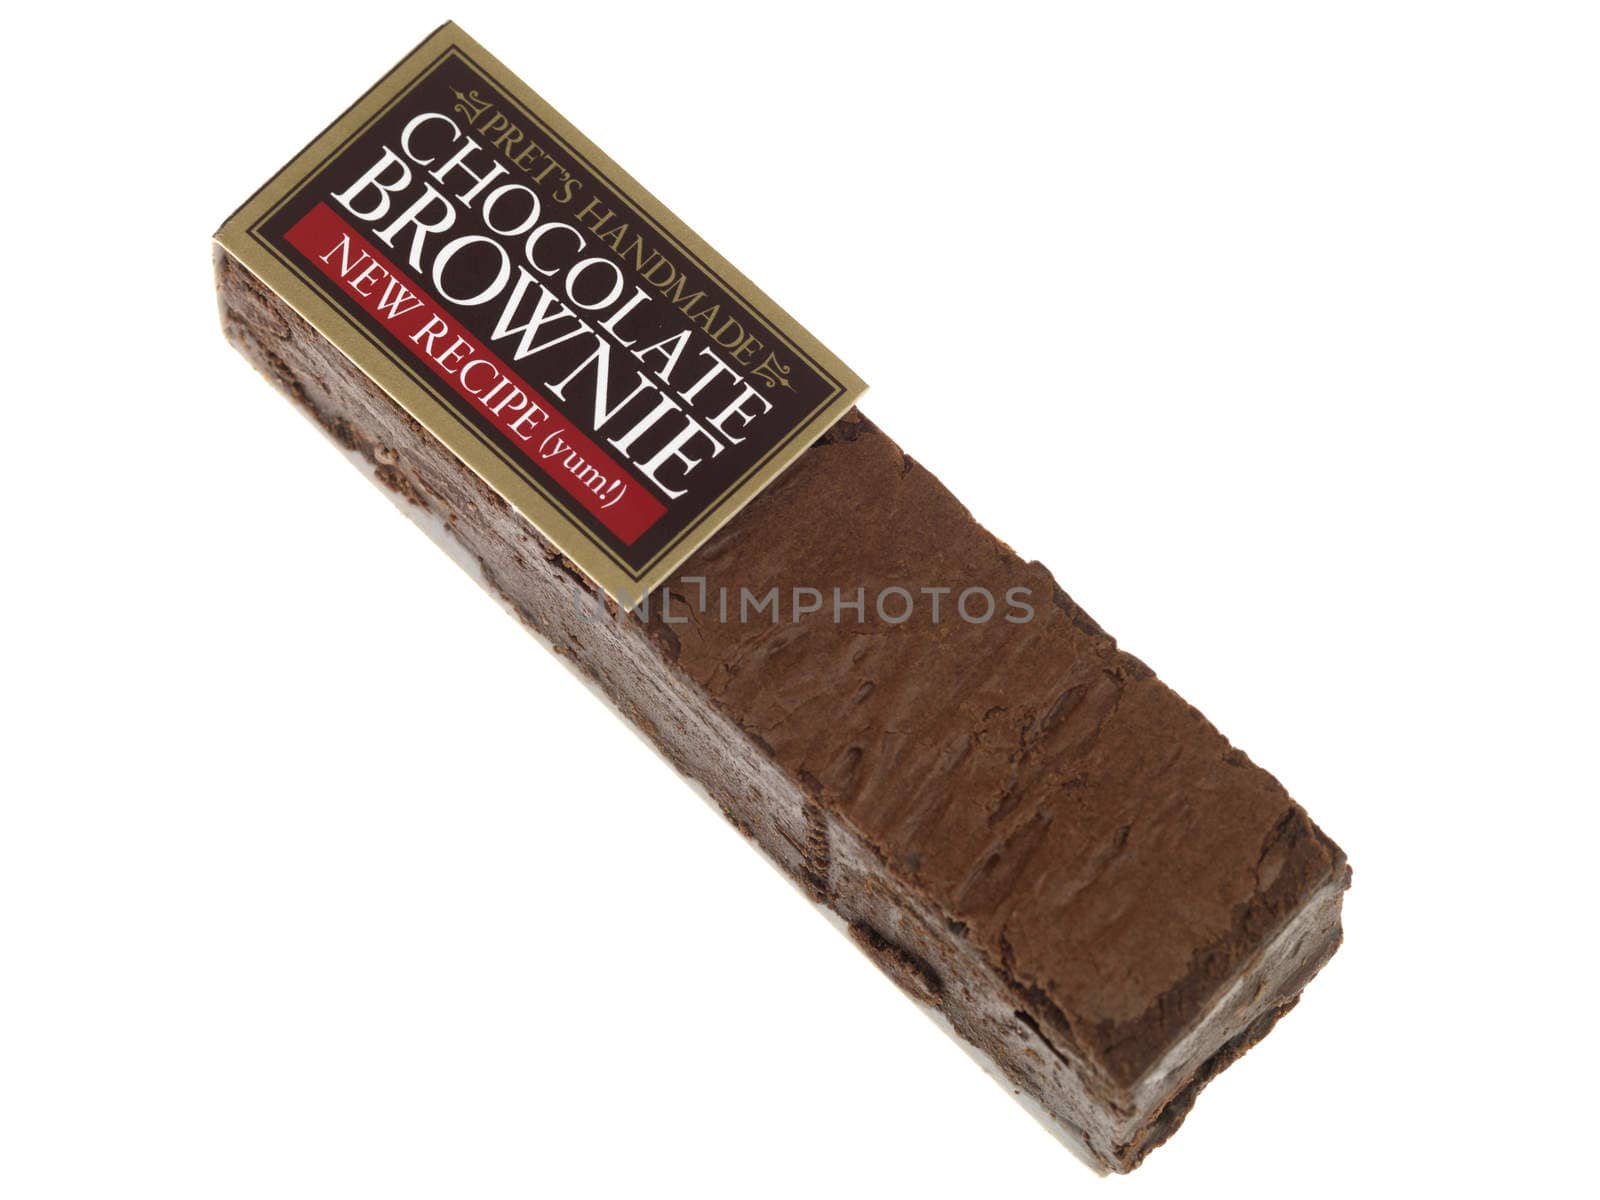 Pret Chocolate Brownie by Whiteboxmedia